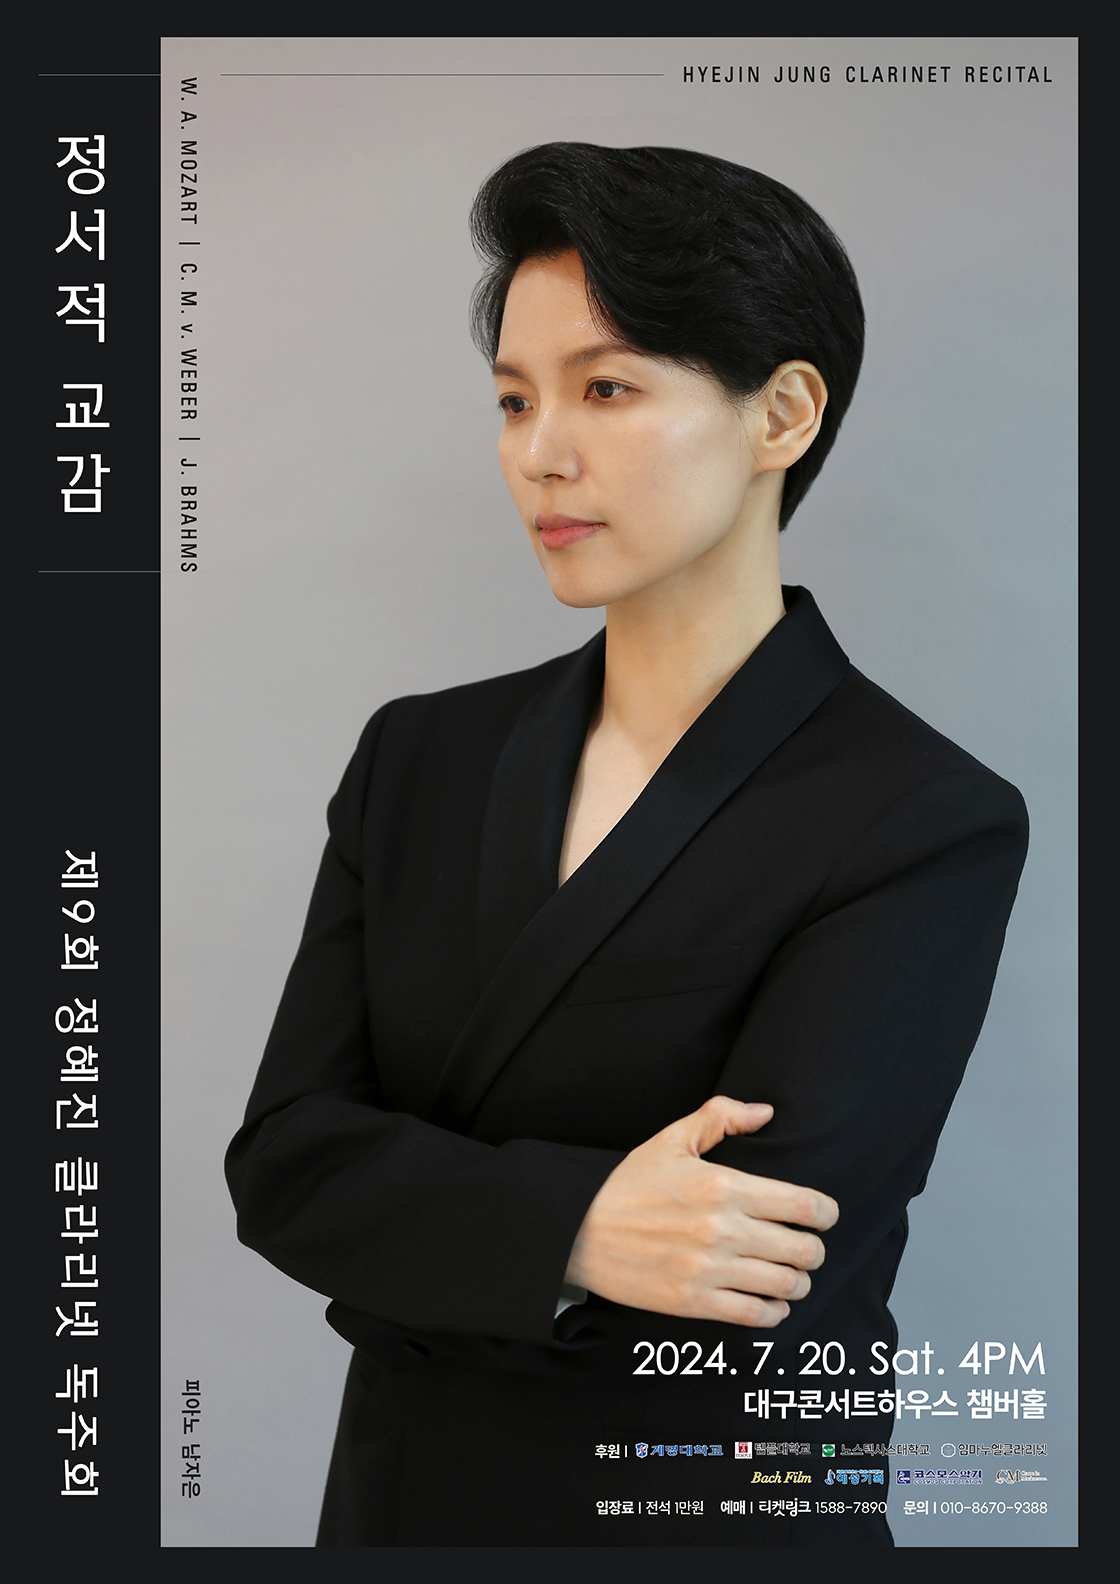 [대구] 제9회 정혜진 클라리넷 독주회: 정서적 교감